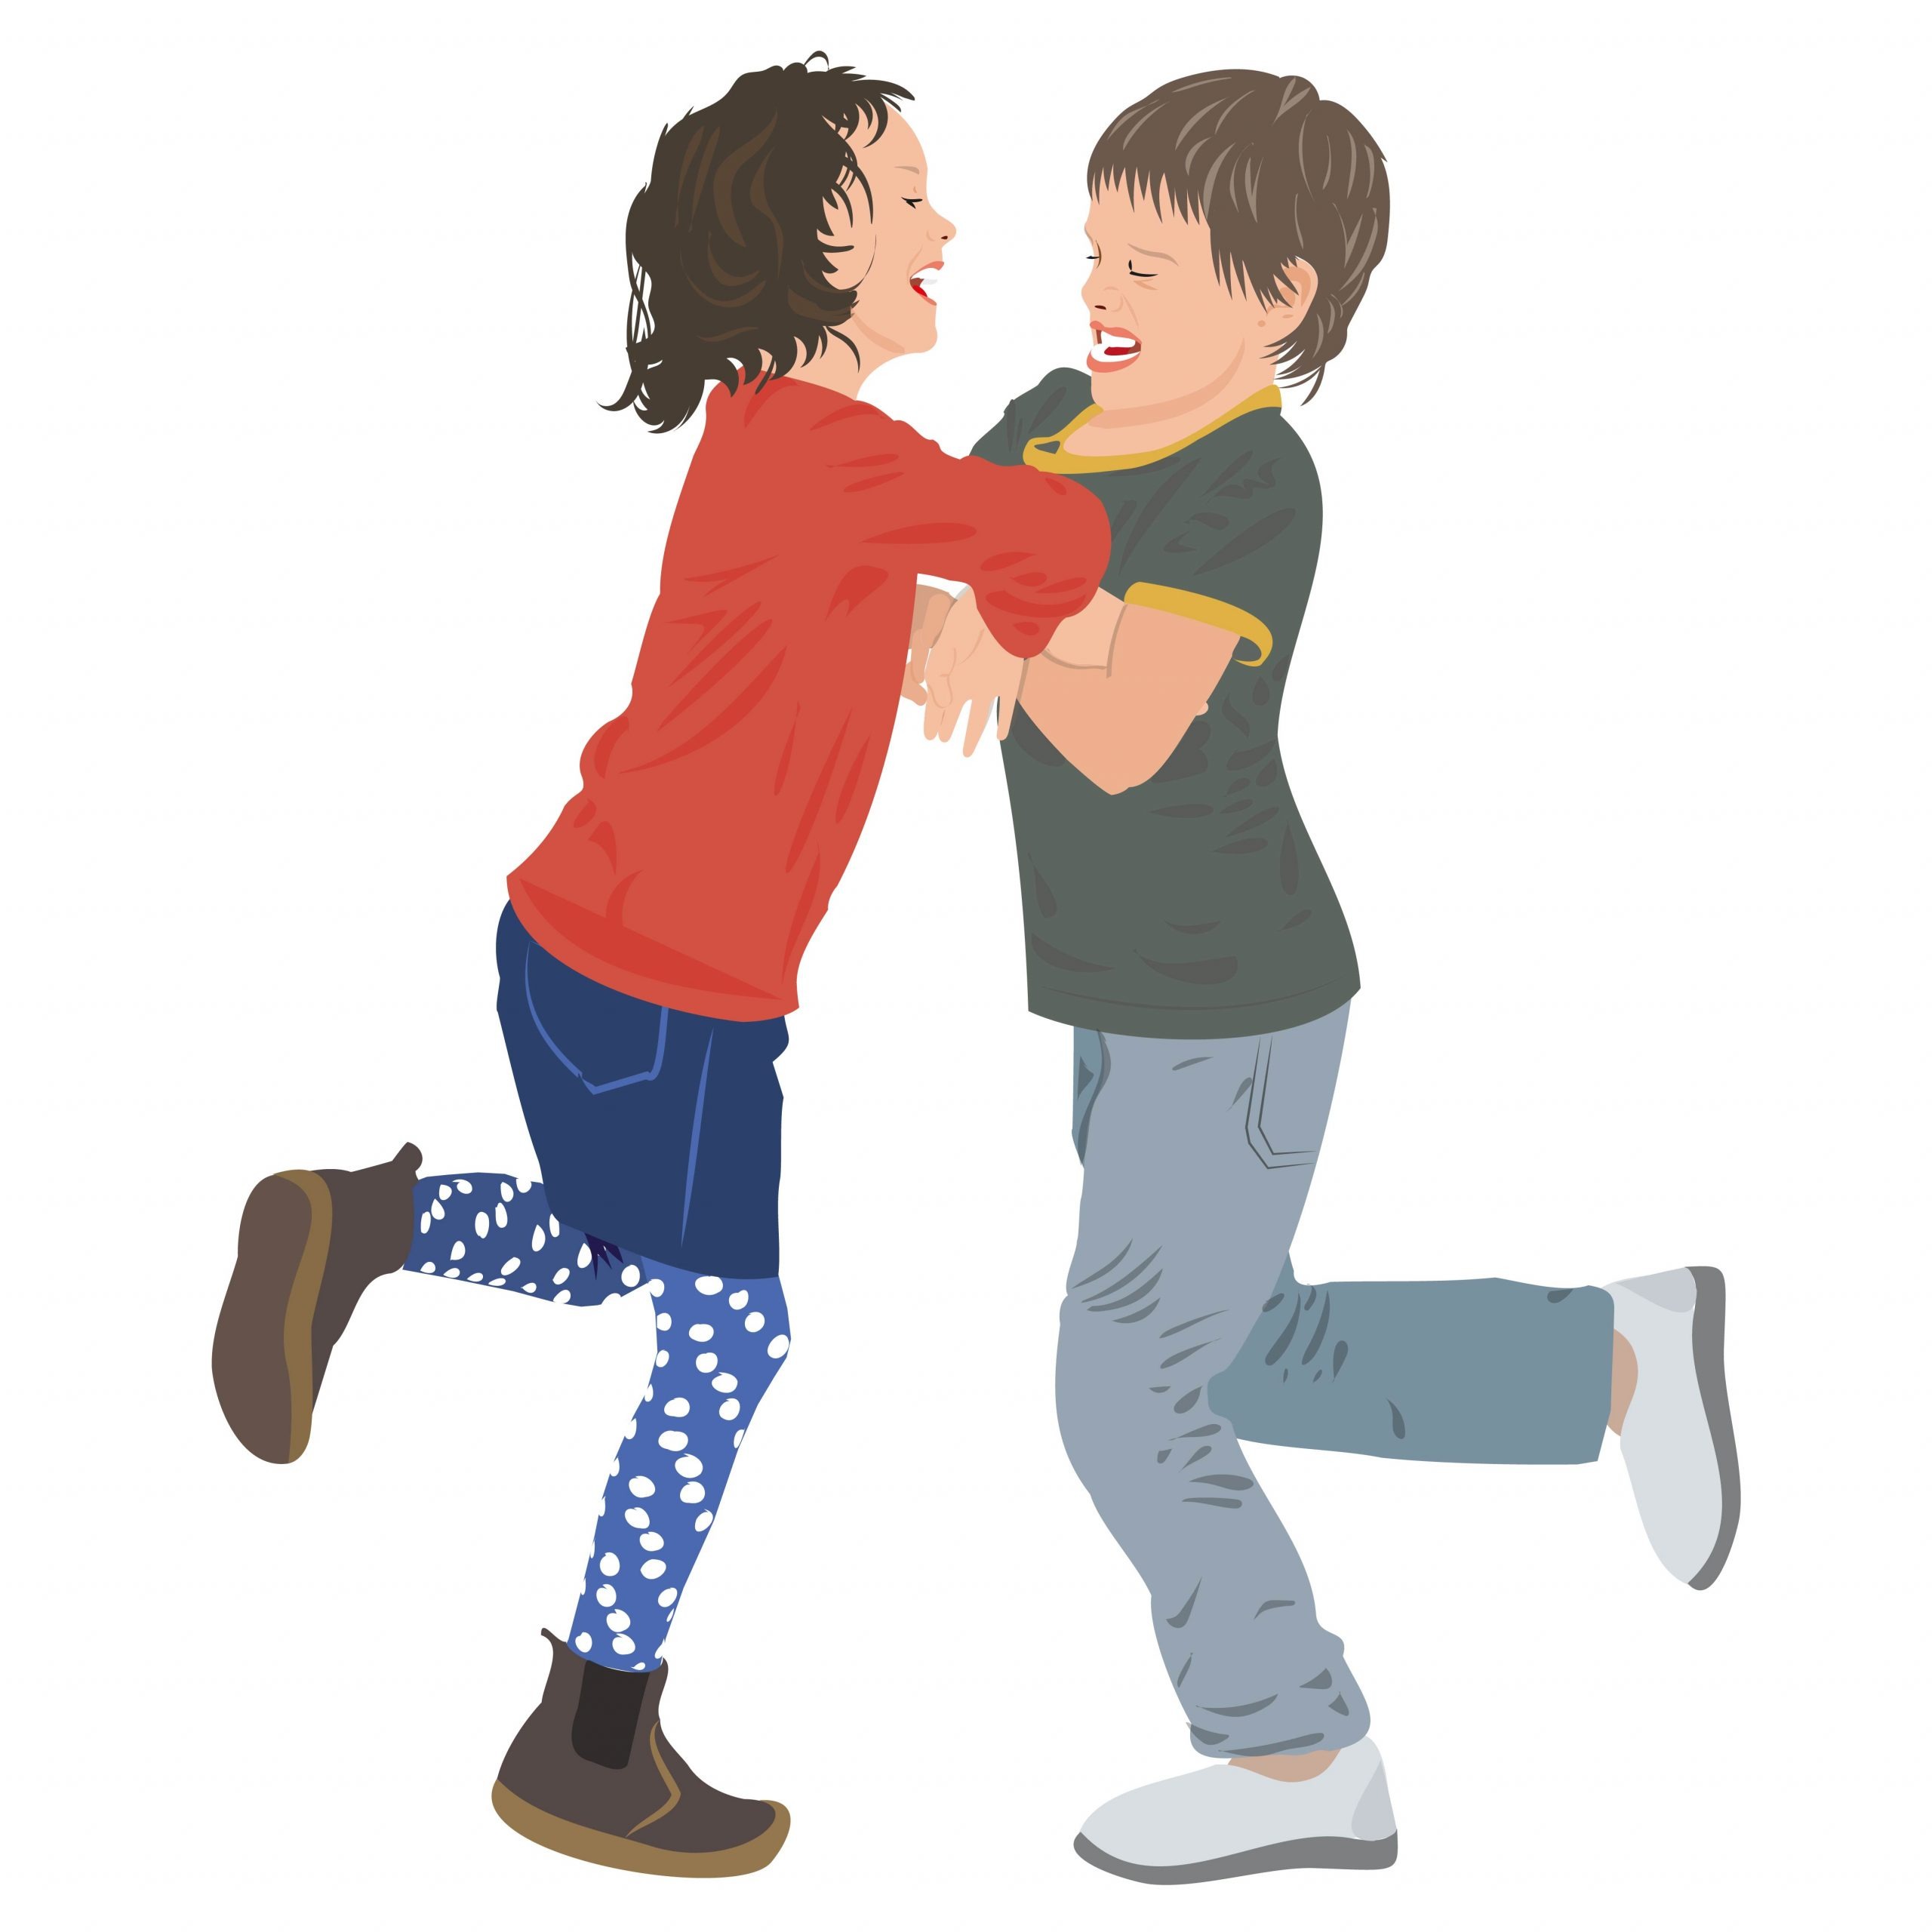 In der Bewegungspause halten ein Mädchen und ein Junge ihre Arme und Hände in Brusthöhe verschränkt und versuchen, auf nur einem Bein stehend die/den andere/n durch kräftiges Schubsen aus dem Gleichgewicht zu bringen, ohne ihr eigenes dabei zu verlieren.